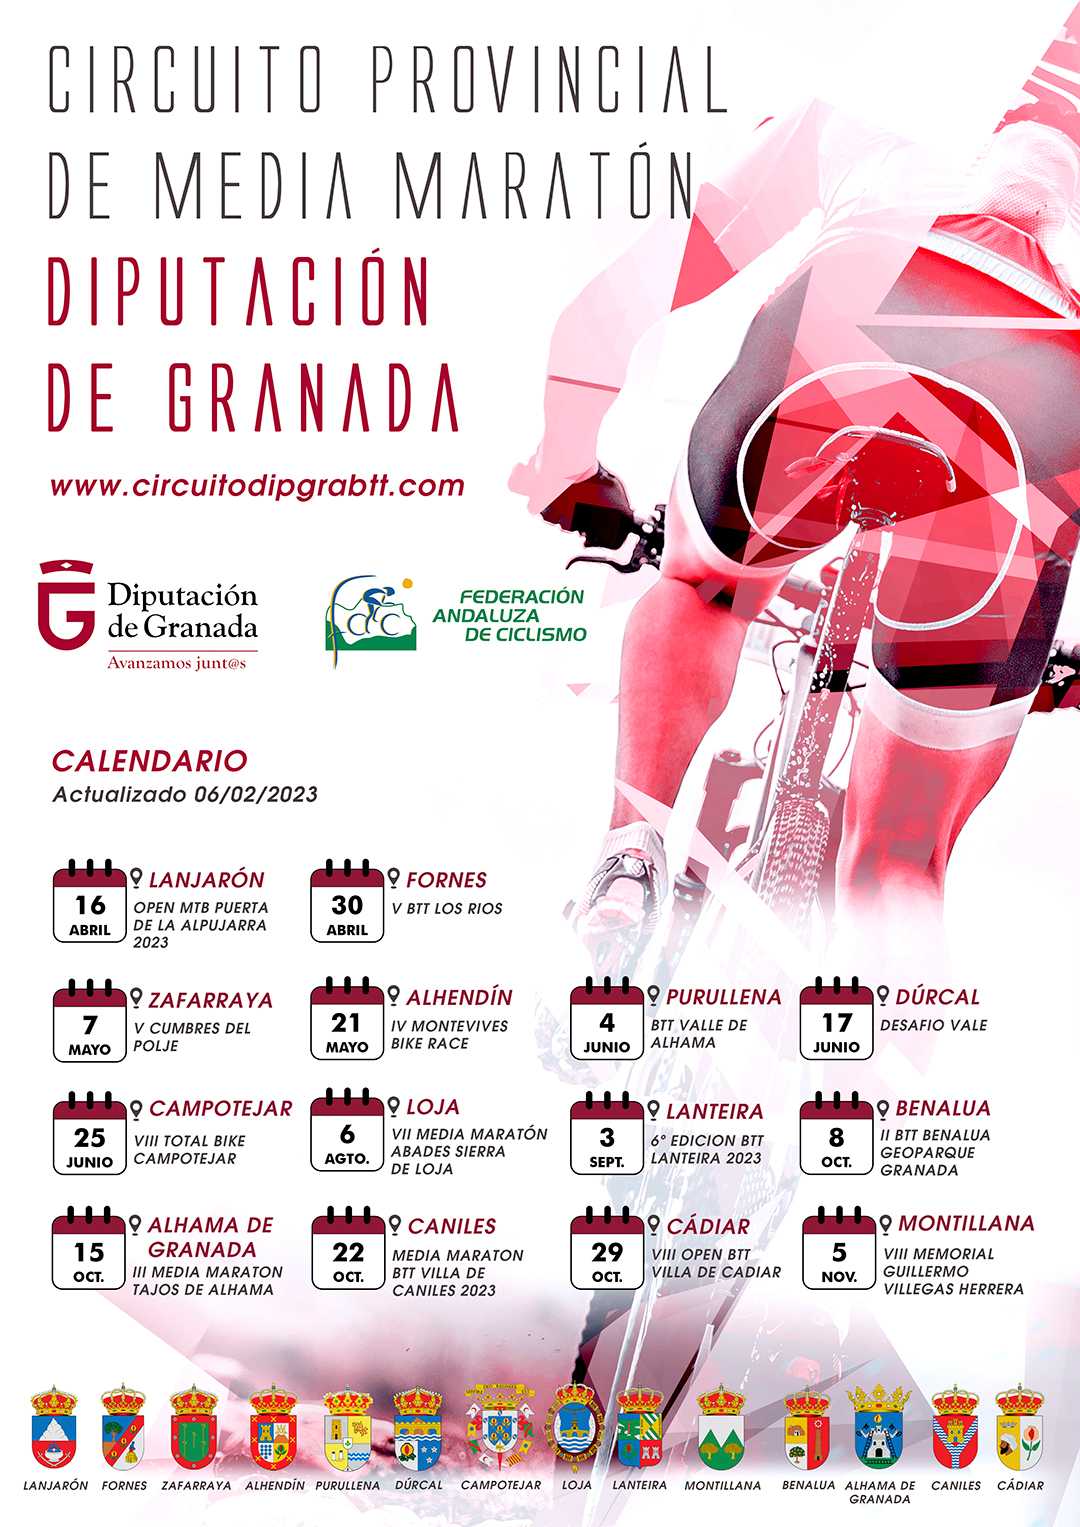 El Circuito Diputación Granada Media Maratón se adentra en su fase decisiva con la cita de Caniles